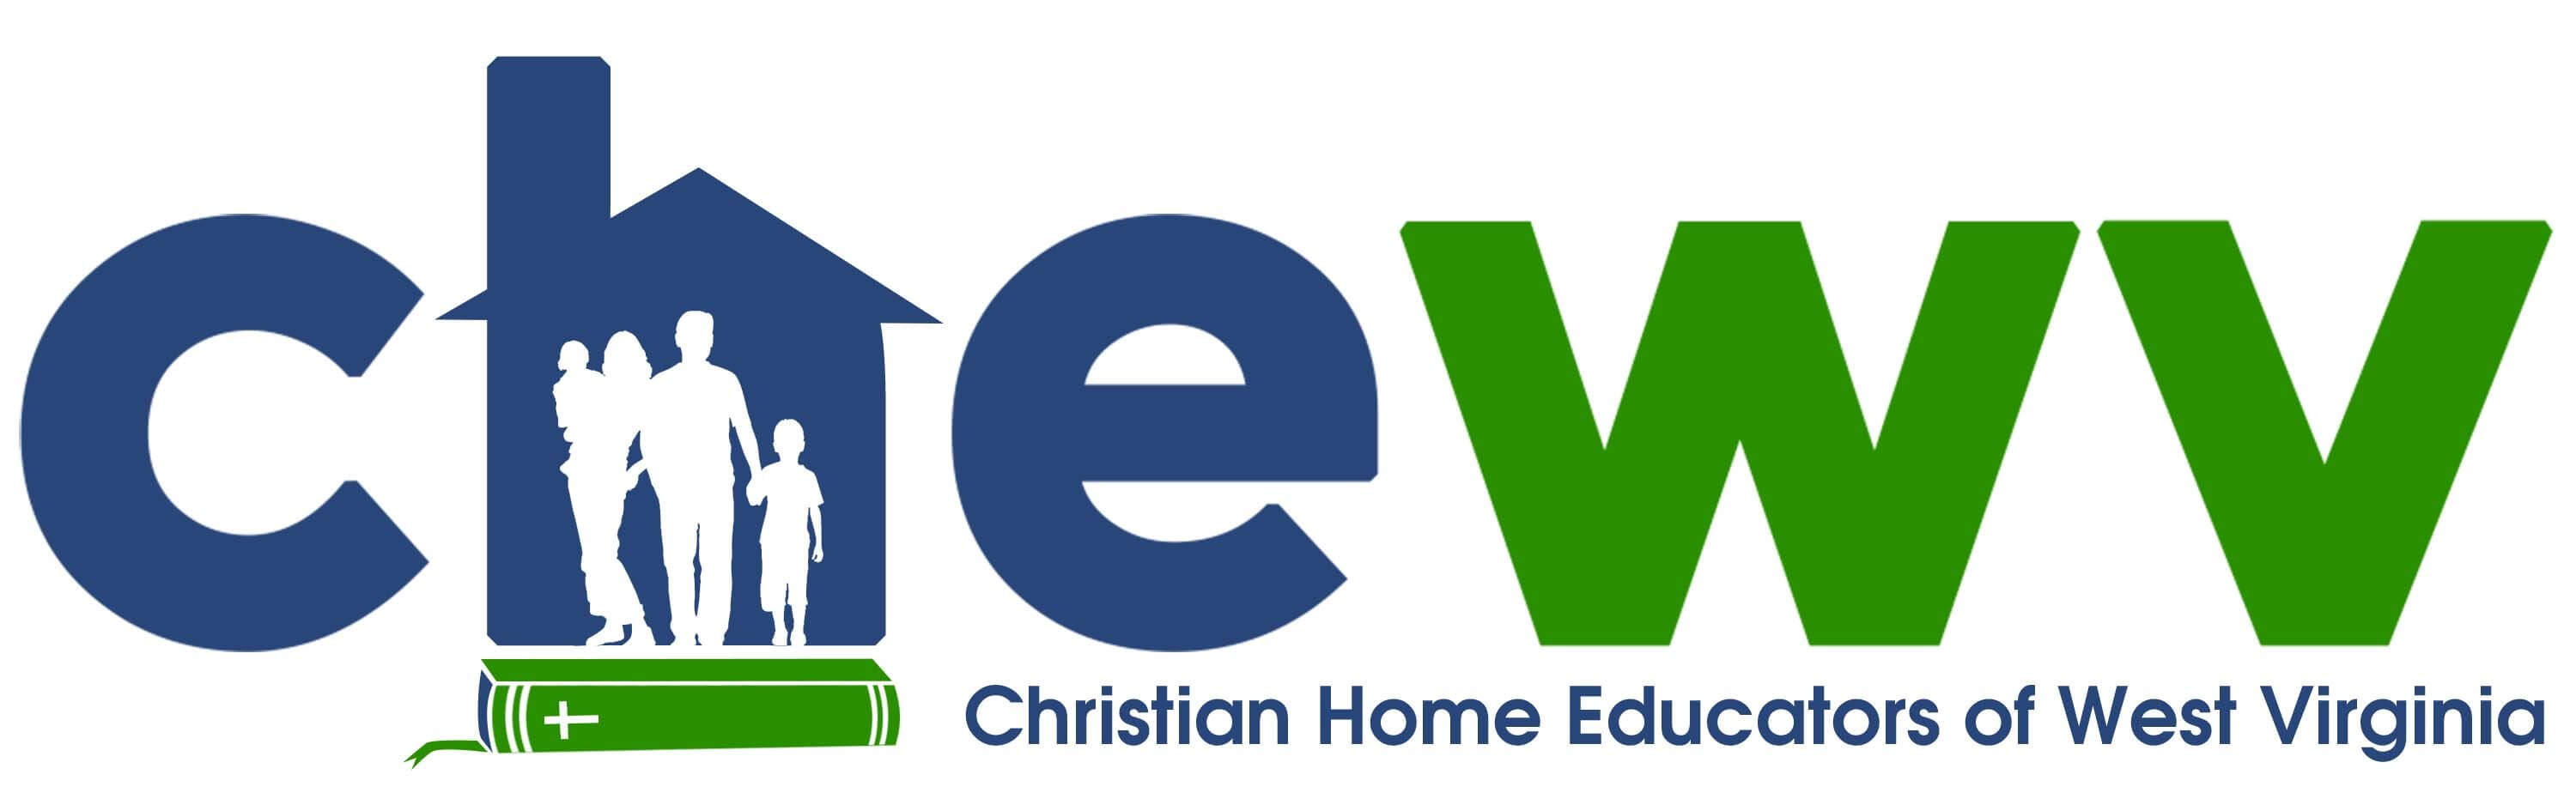 CHEWV and Homeschool University